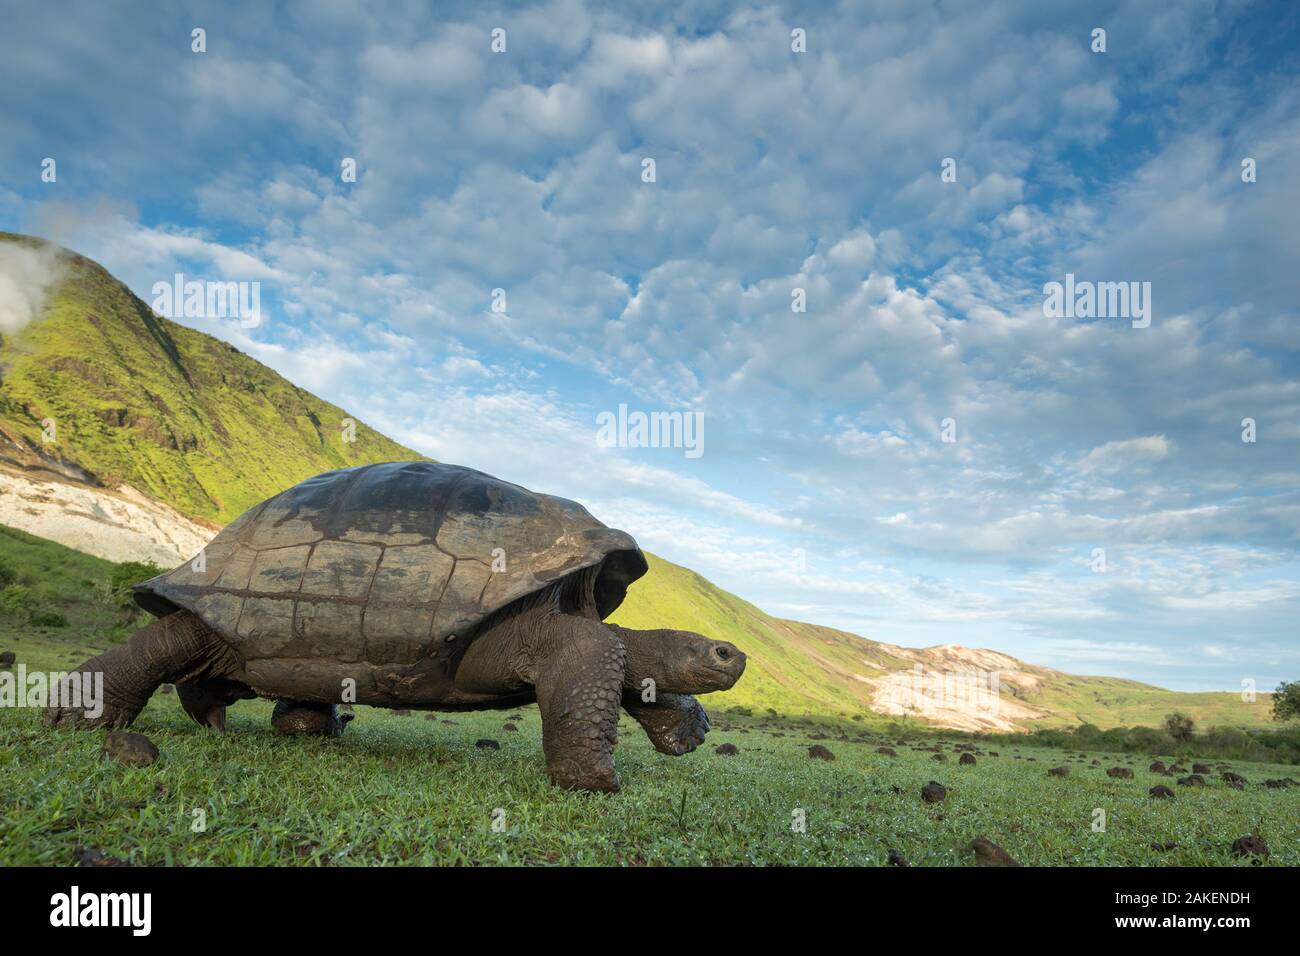 Alcedo giant tortoise (Chelonoidis vandenburghi) walking,  Alcedo Volcano, Isabela Island, Galapagos Stock Photo